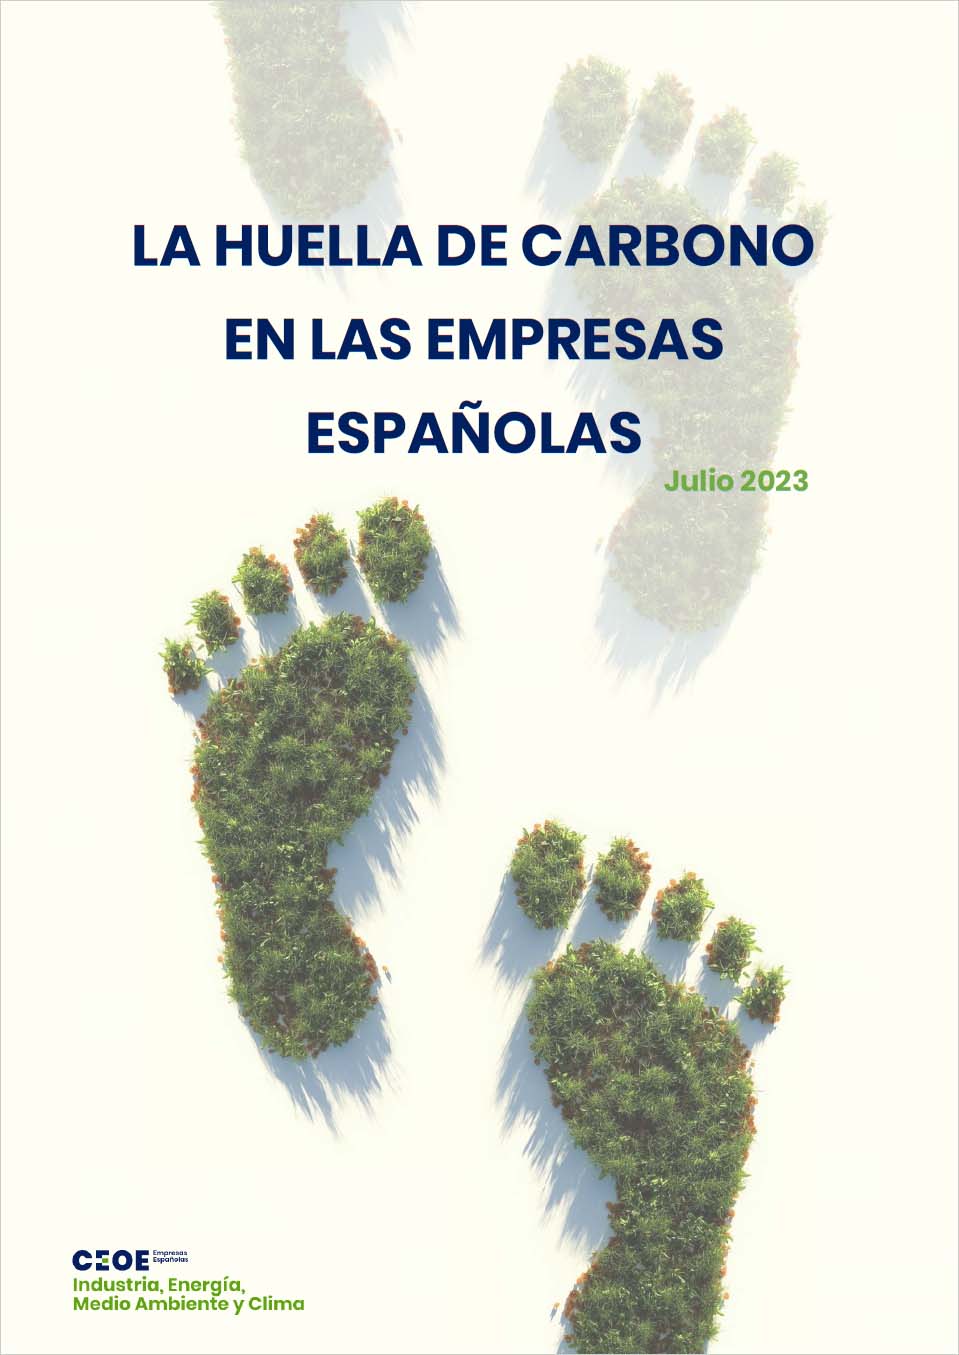 La huella de carbono en las empresas españolas